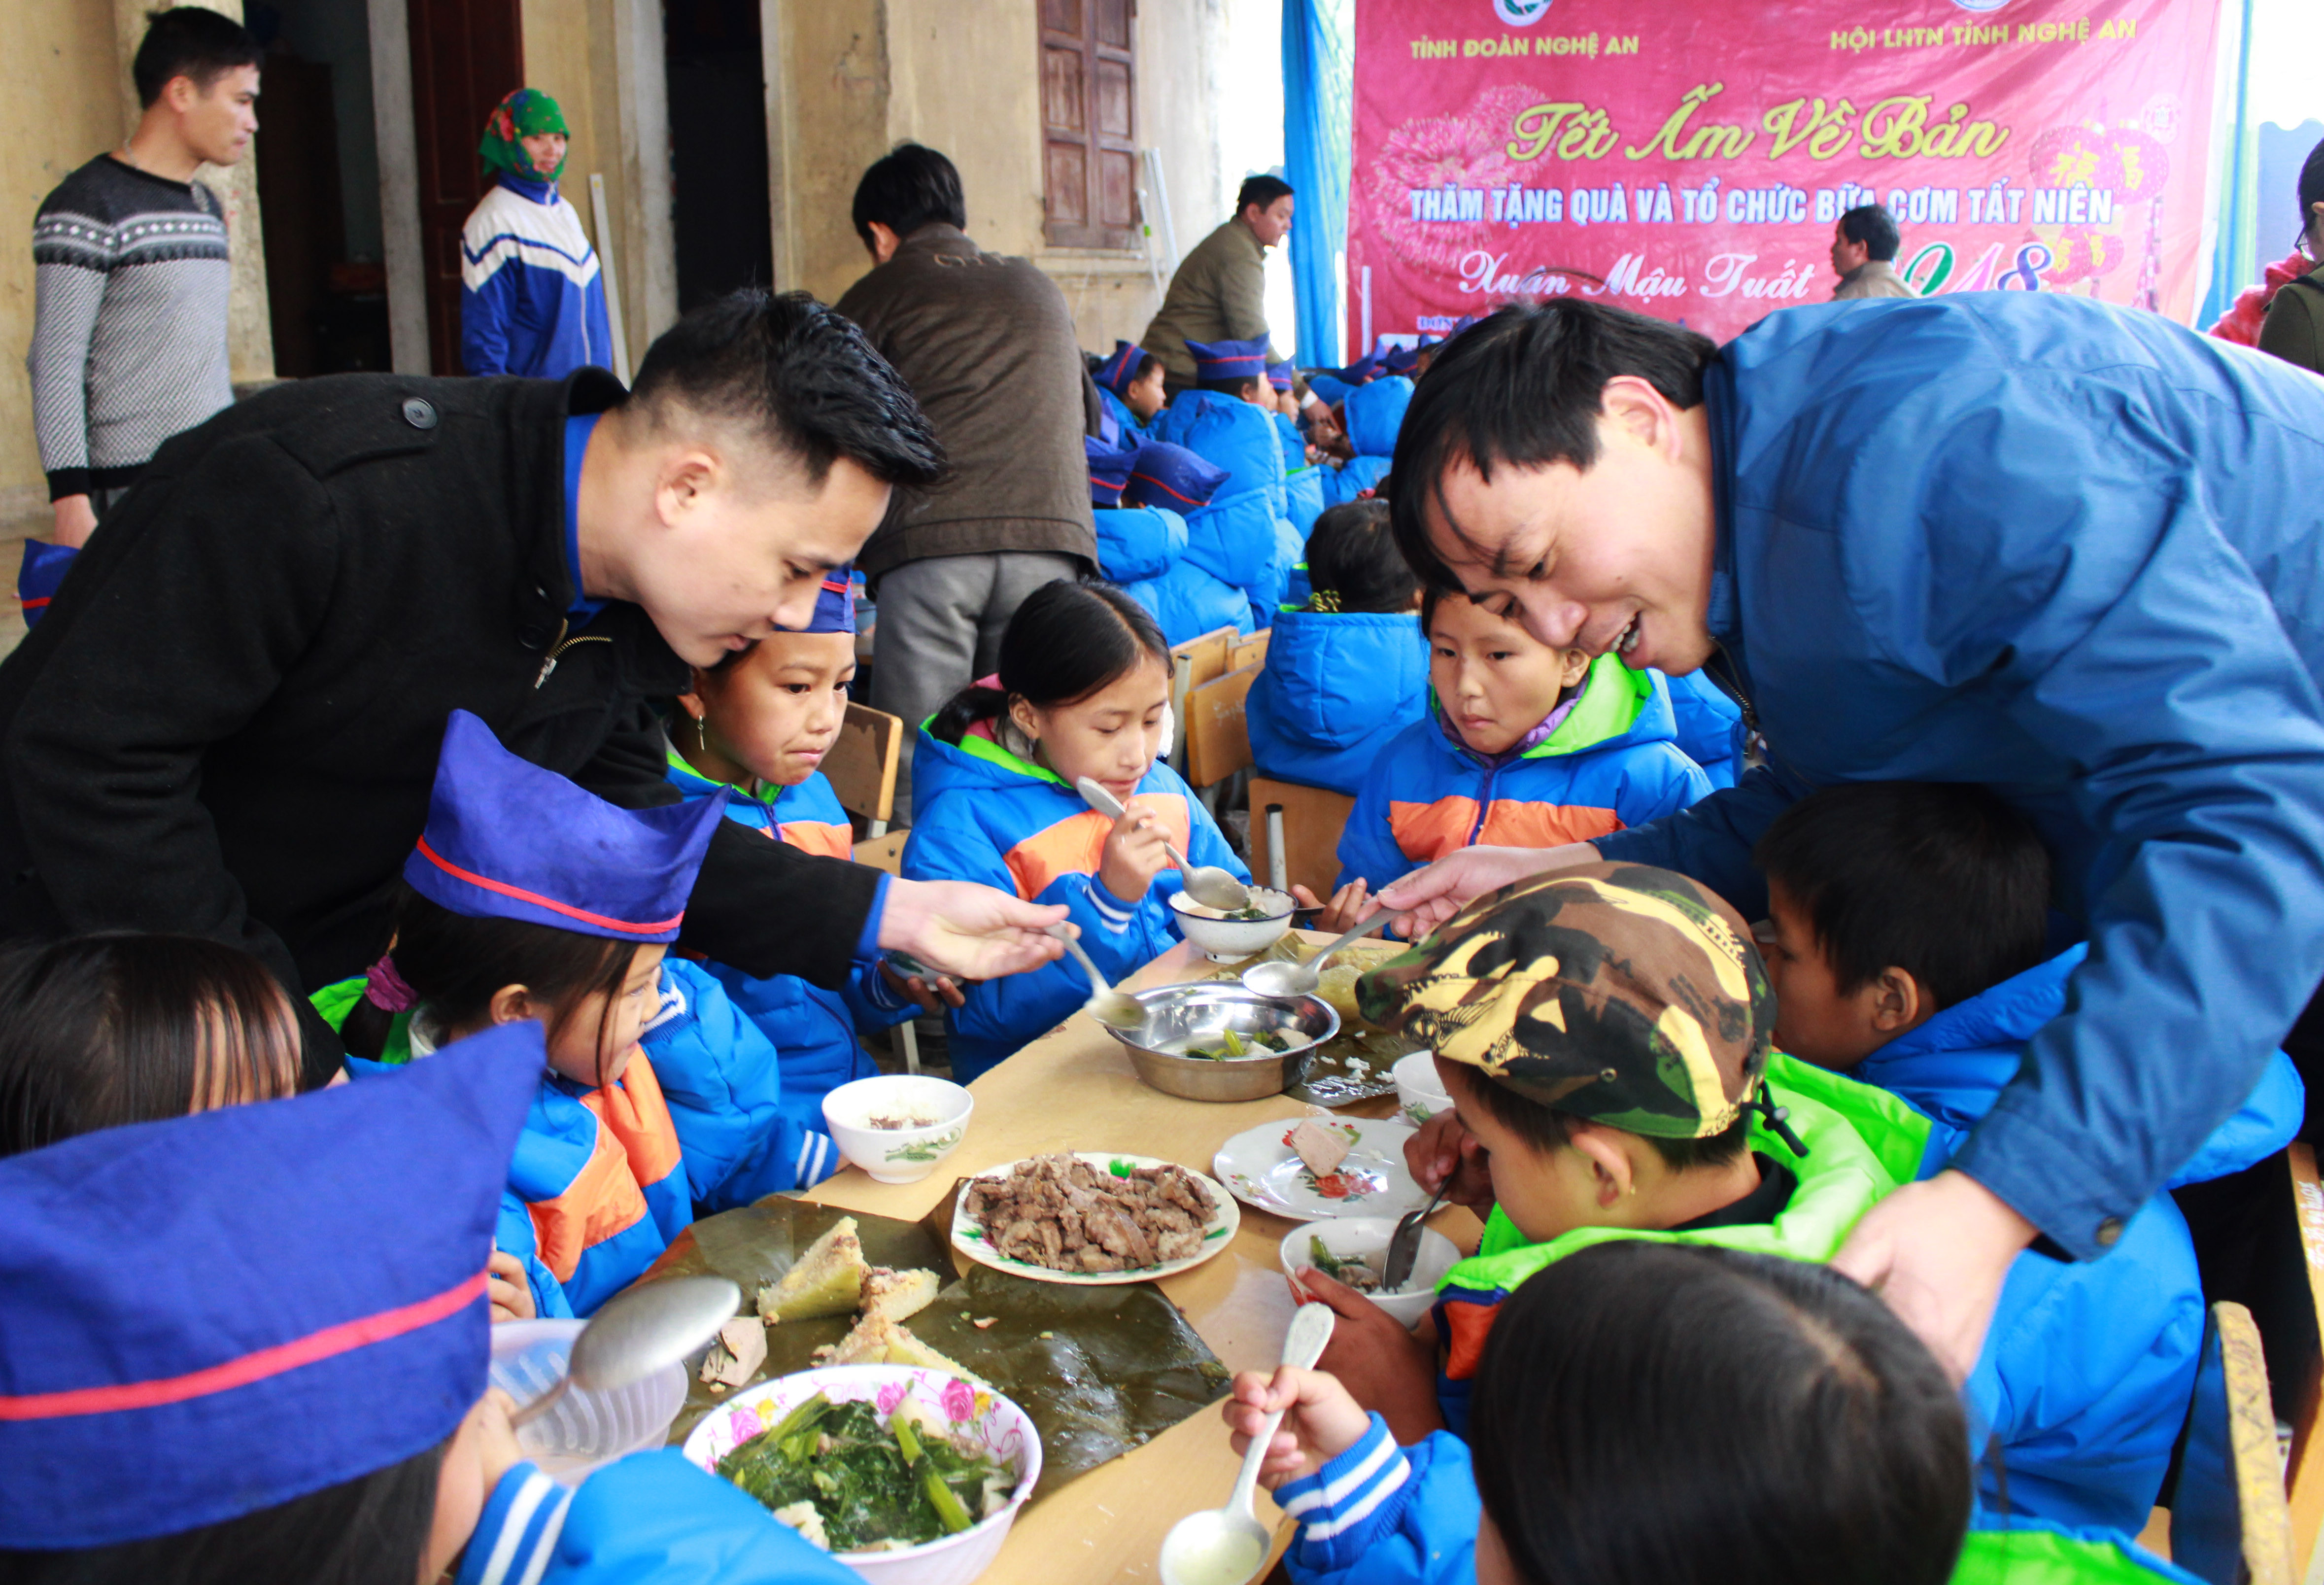 Tỉnh đoàn – Hội LHTN tỉnh Nghệ An tổ chức bữa cơm tất niên cho các em học sinh trường tiểu học Đoọc Mạy. Ảnh: Phương Thúy